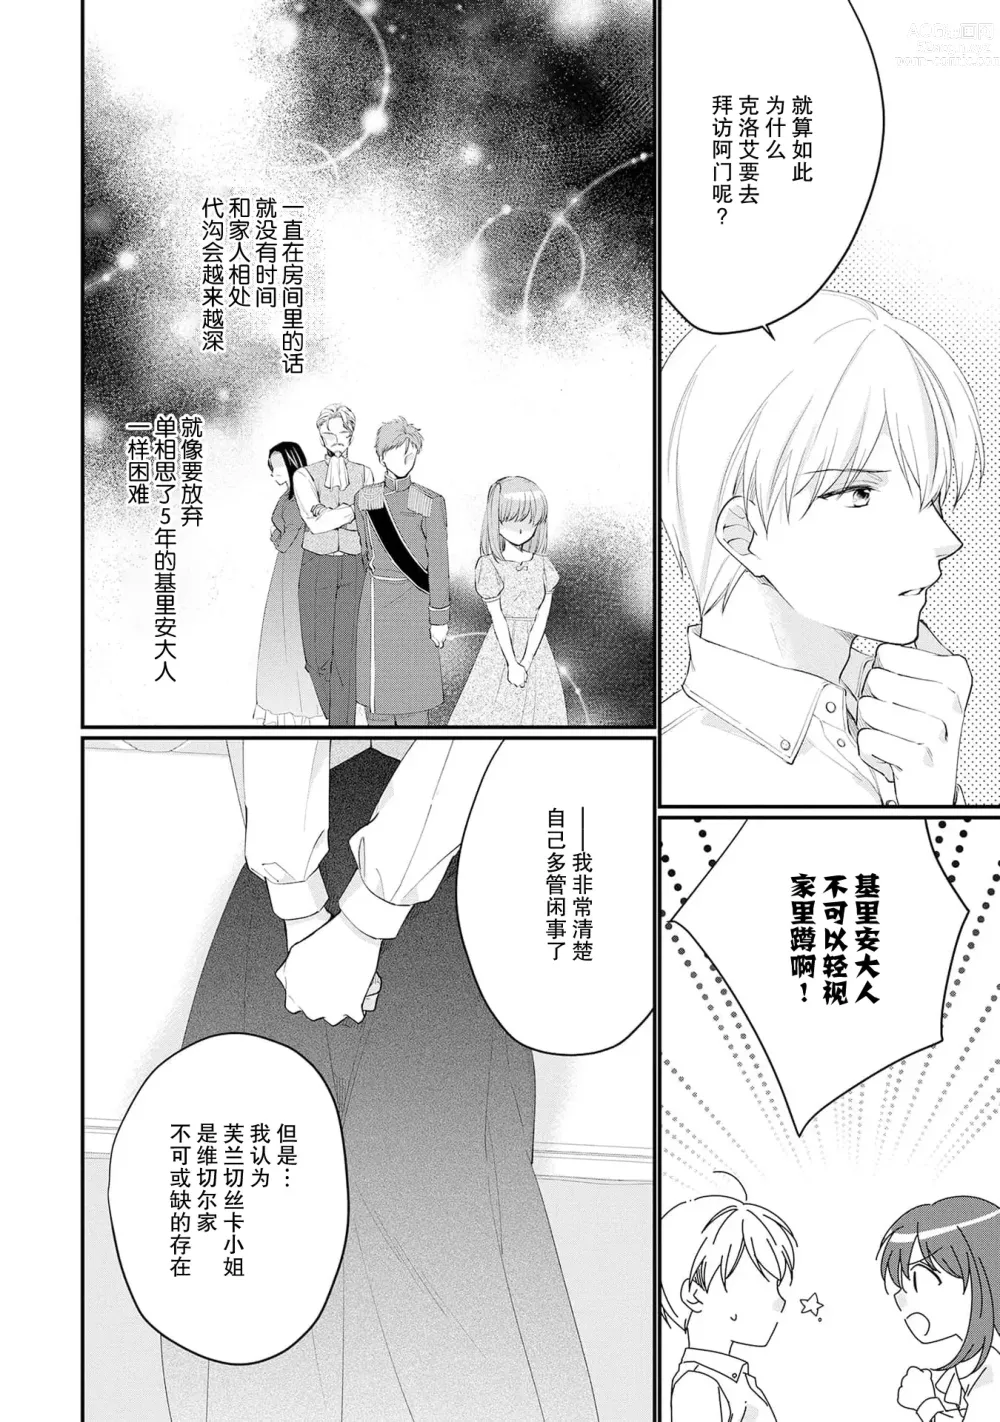 Page 270 of manga 新婚约者超宠我 1-11